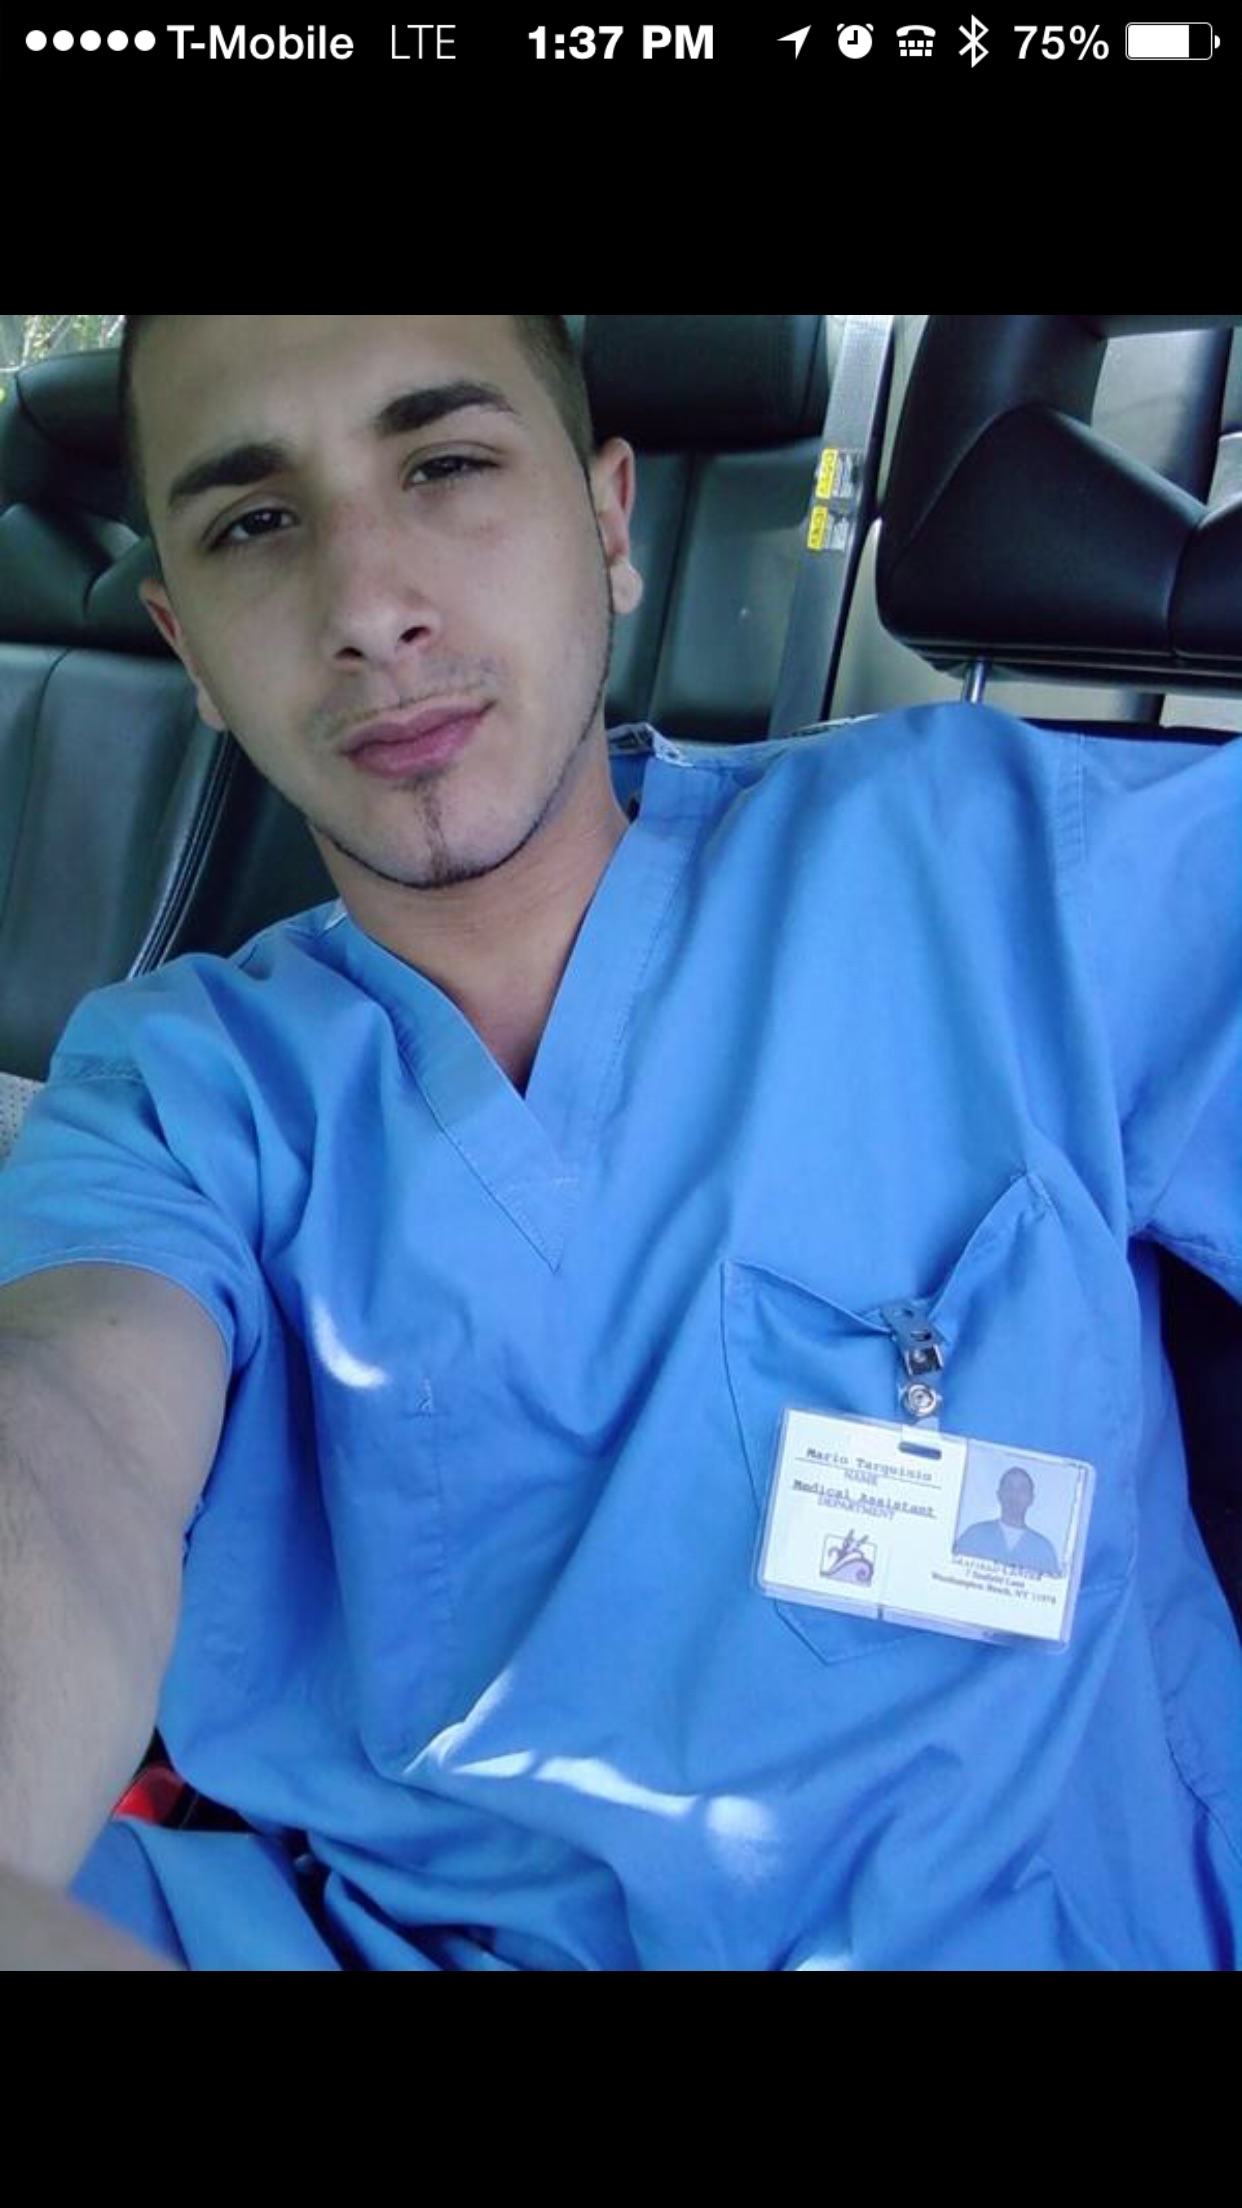 Me in my scrubs